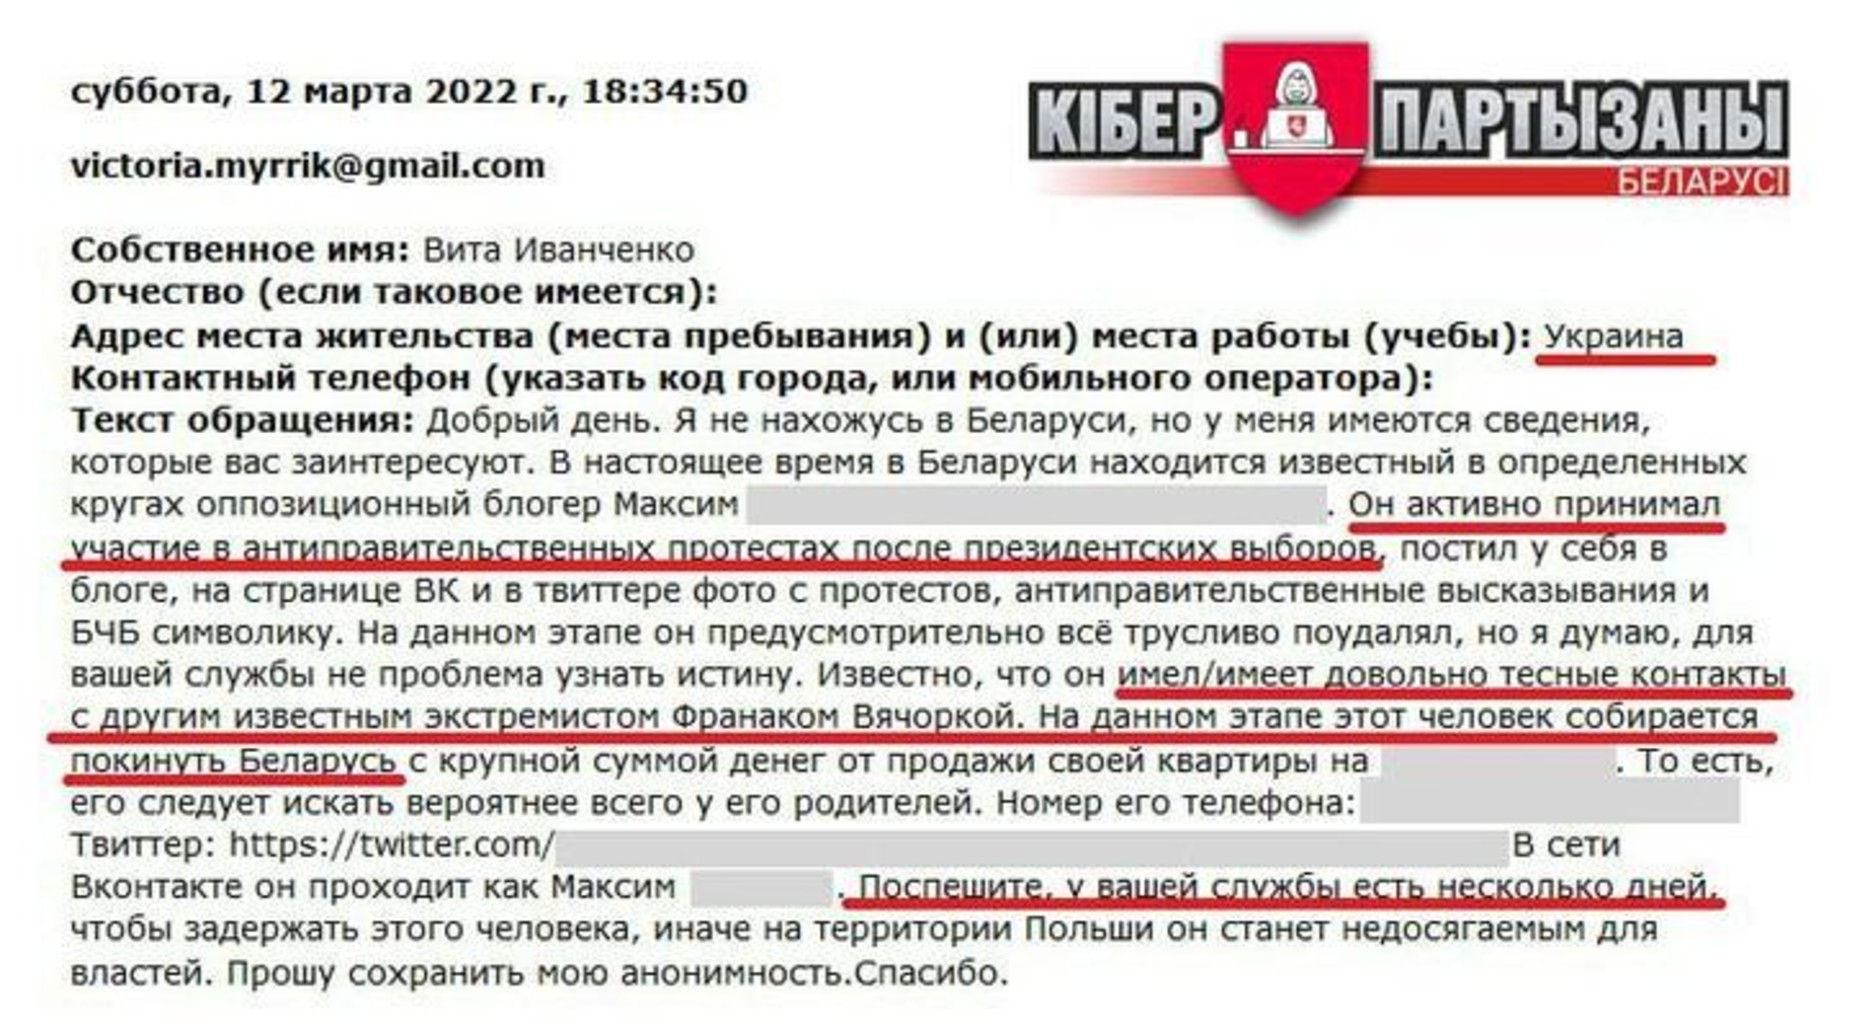 Пример сообщения, отправленного в КГБ через сайт ведомства. Фото: Telegram / cpartisans_by